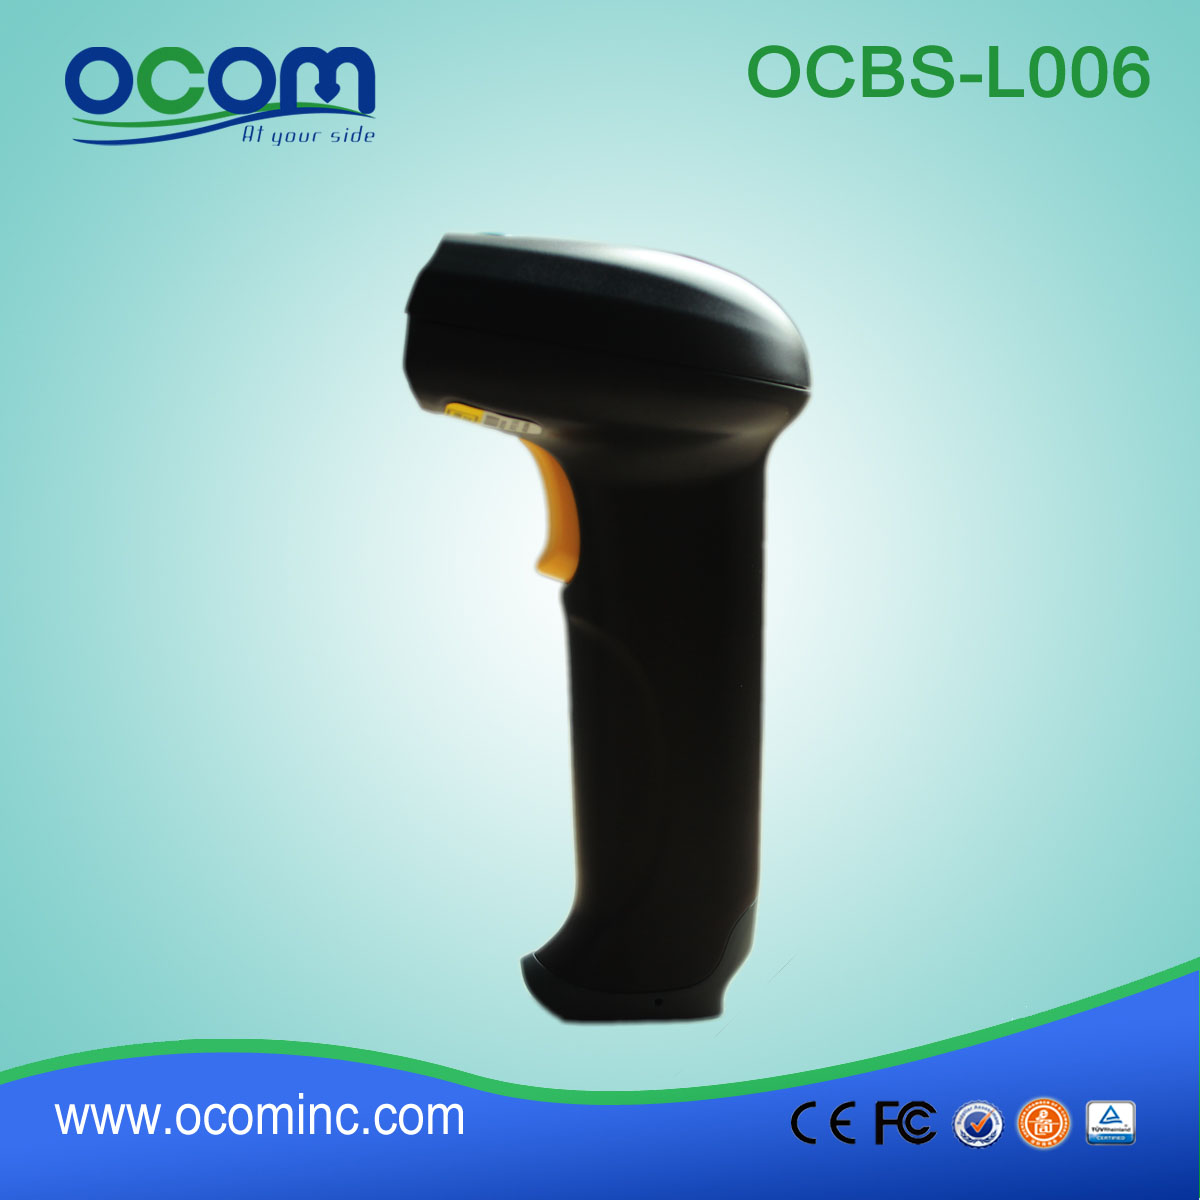 OCBs-L006 USB Ручной лазерный сканер штрих-кода